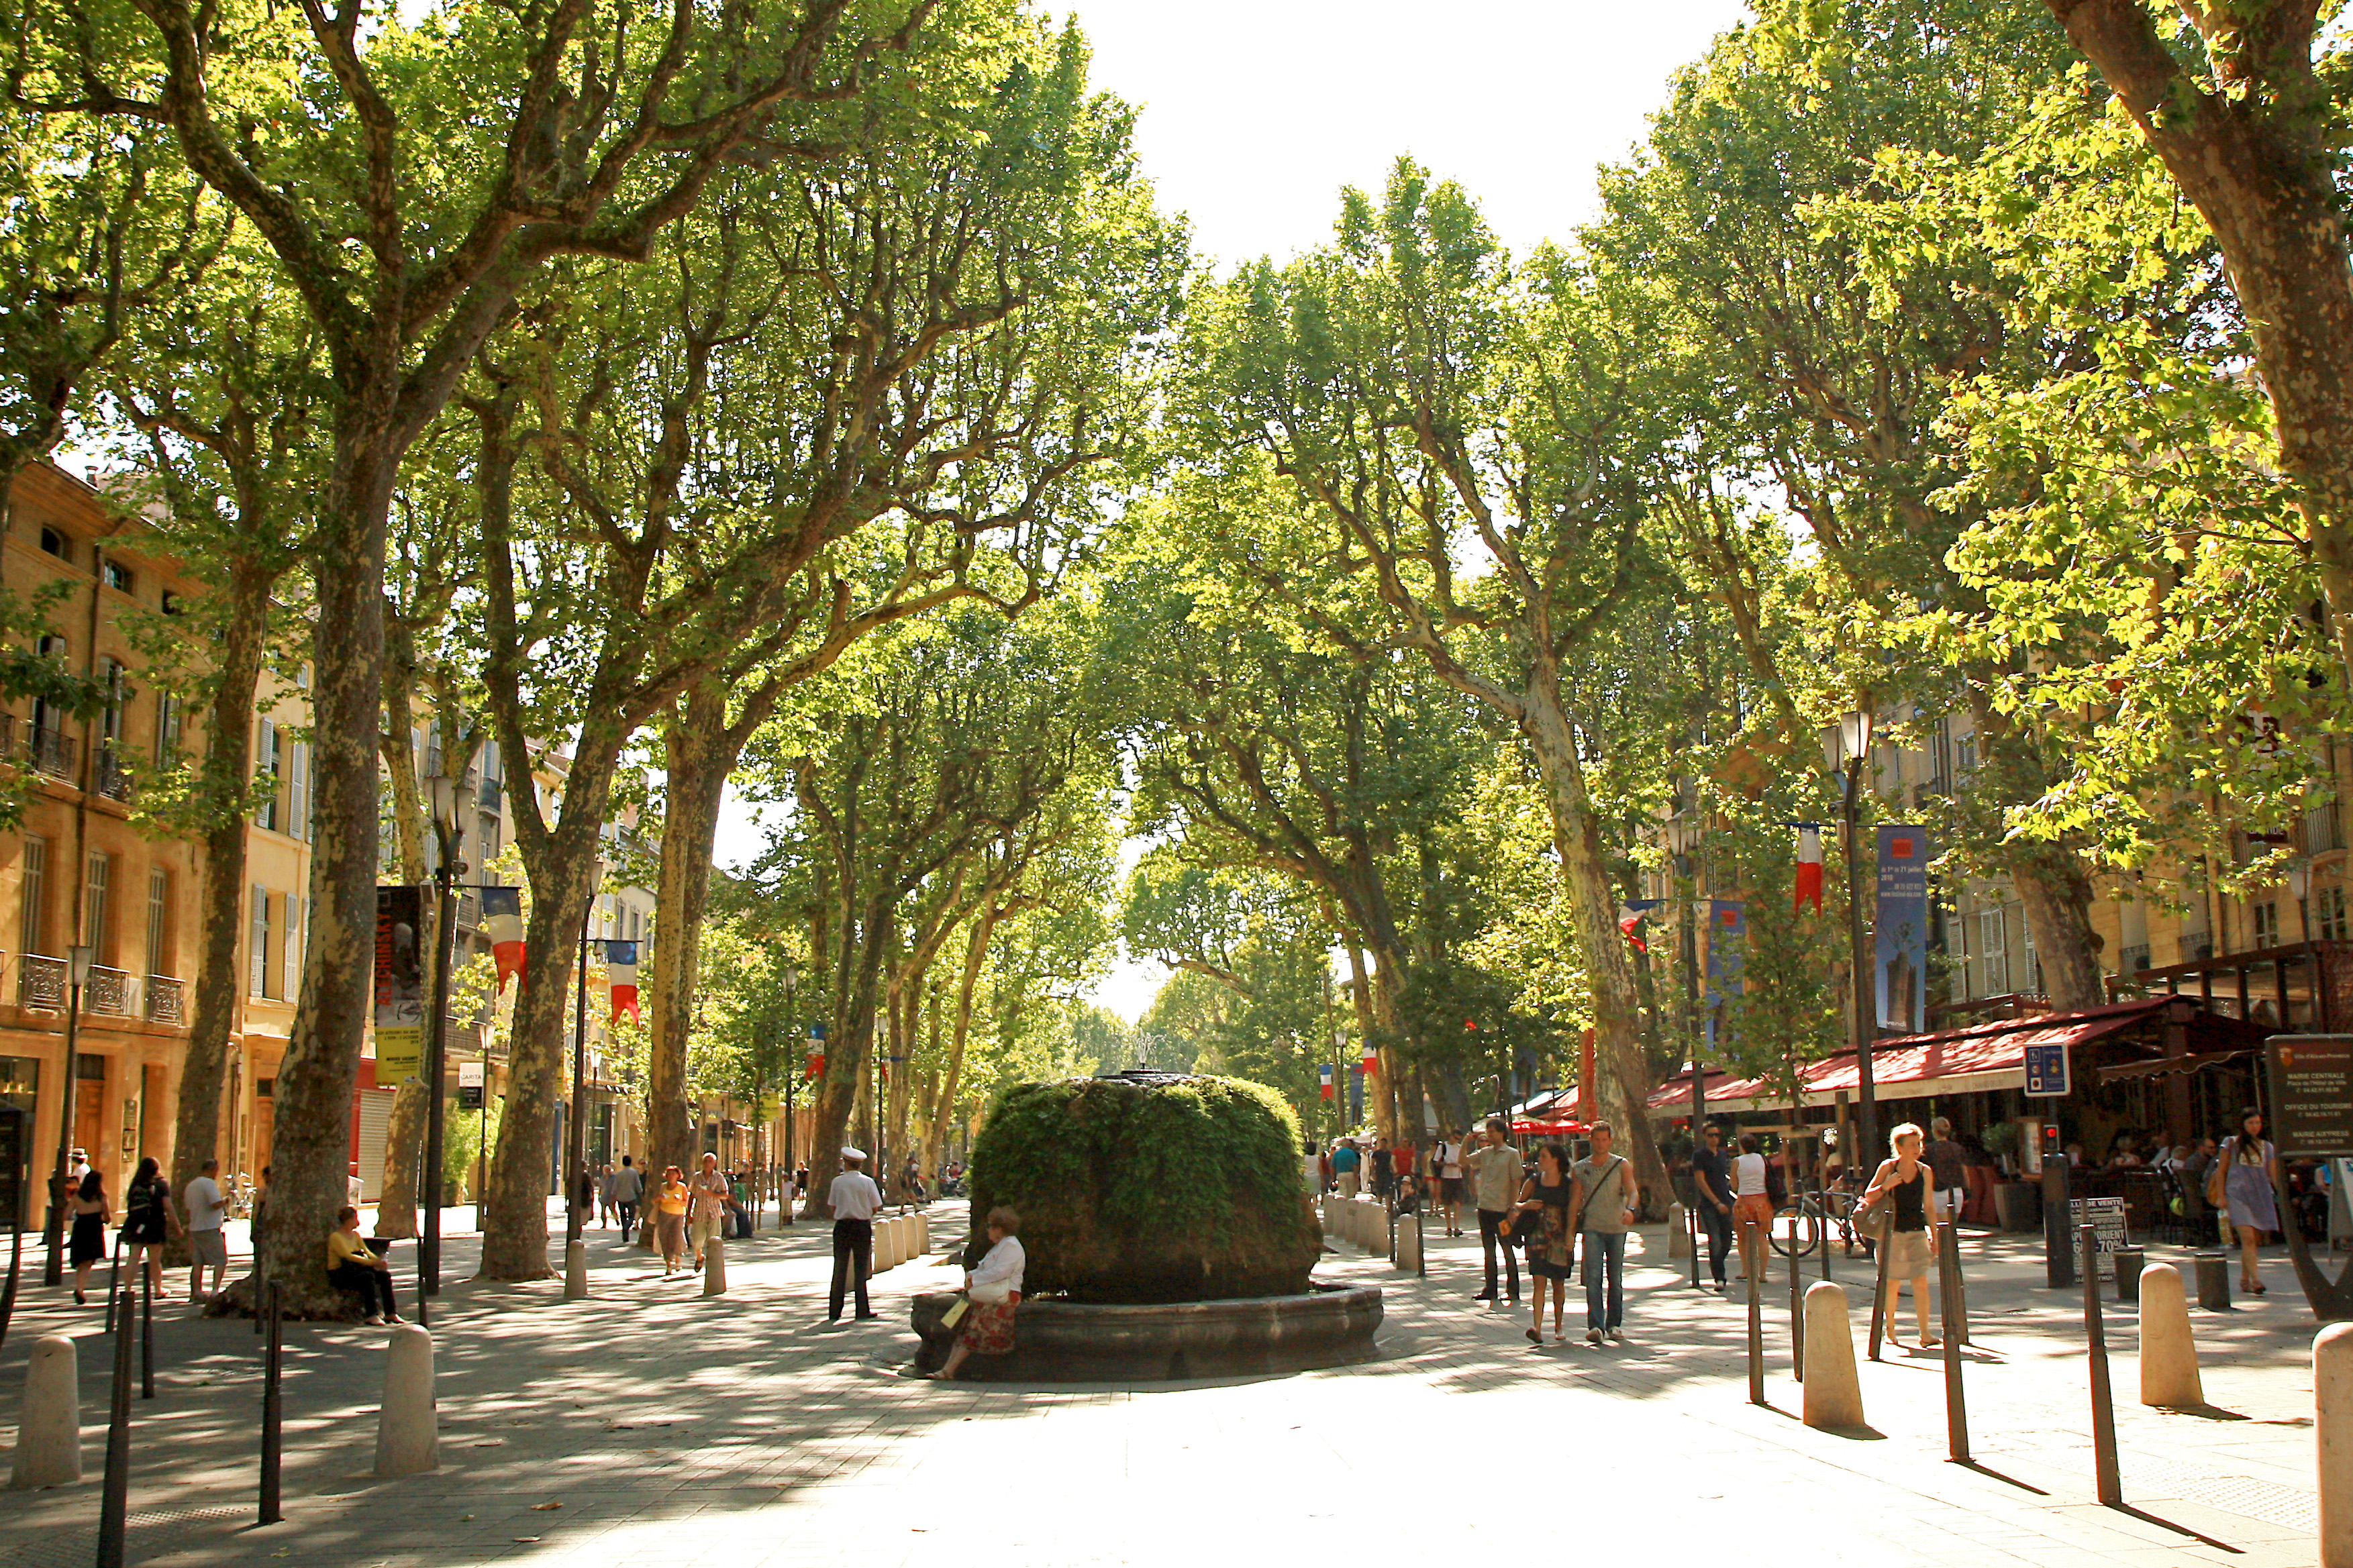 Фотографии Экс-ан-Прованса (Aix-en-Provence) - достопримечательности, что посмотреть в Экс-ан-Провансе, картины Экс-ан-Прованса, улицы Экс-ан-Прованса